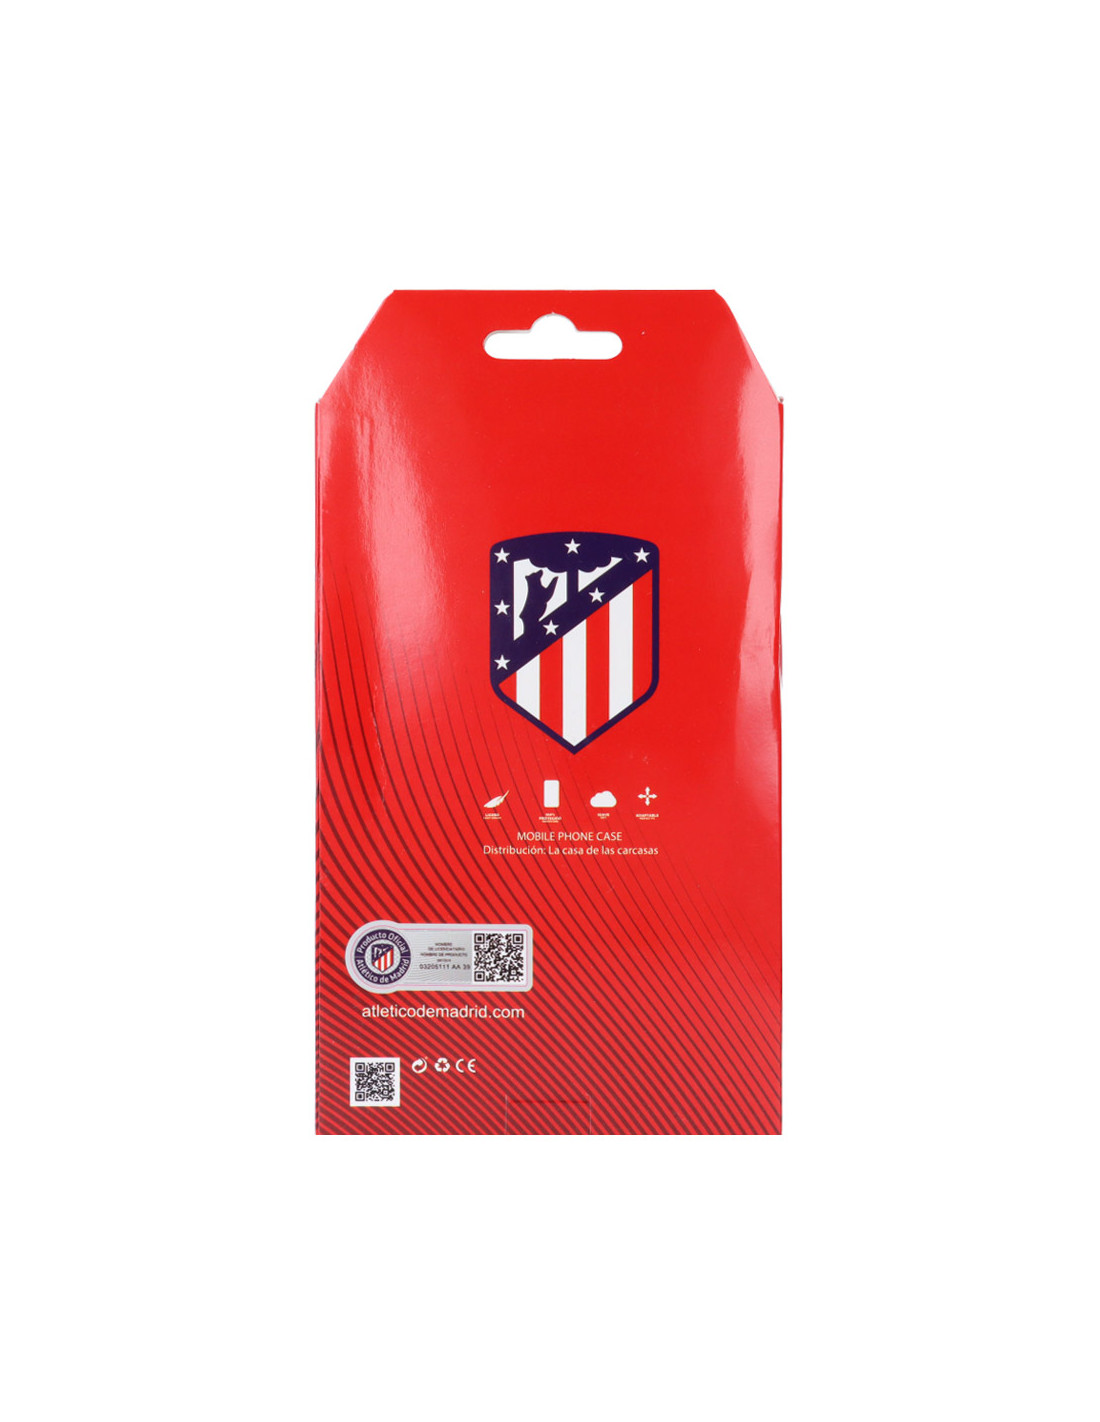 Funda para Xiaomi Redmi Note 10 5G del Atleti Escudo Dorado Fondo Negro -  Licencia Oficial Atlético